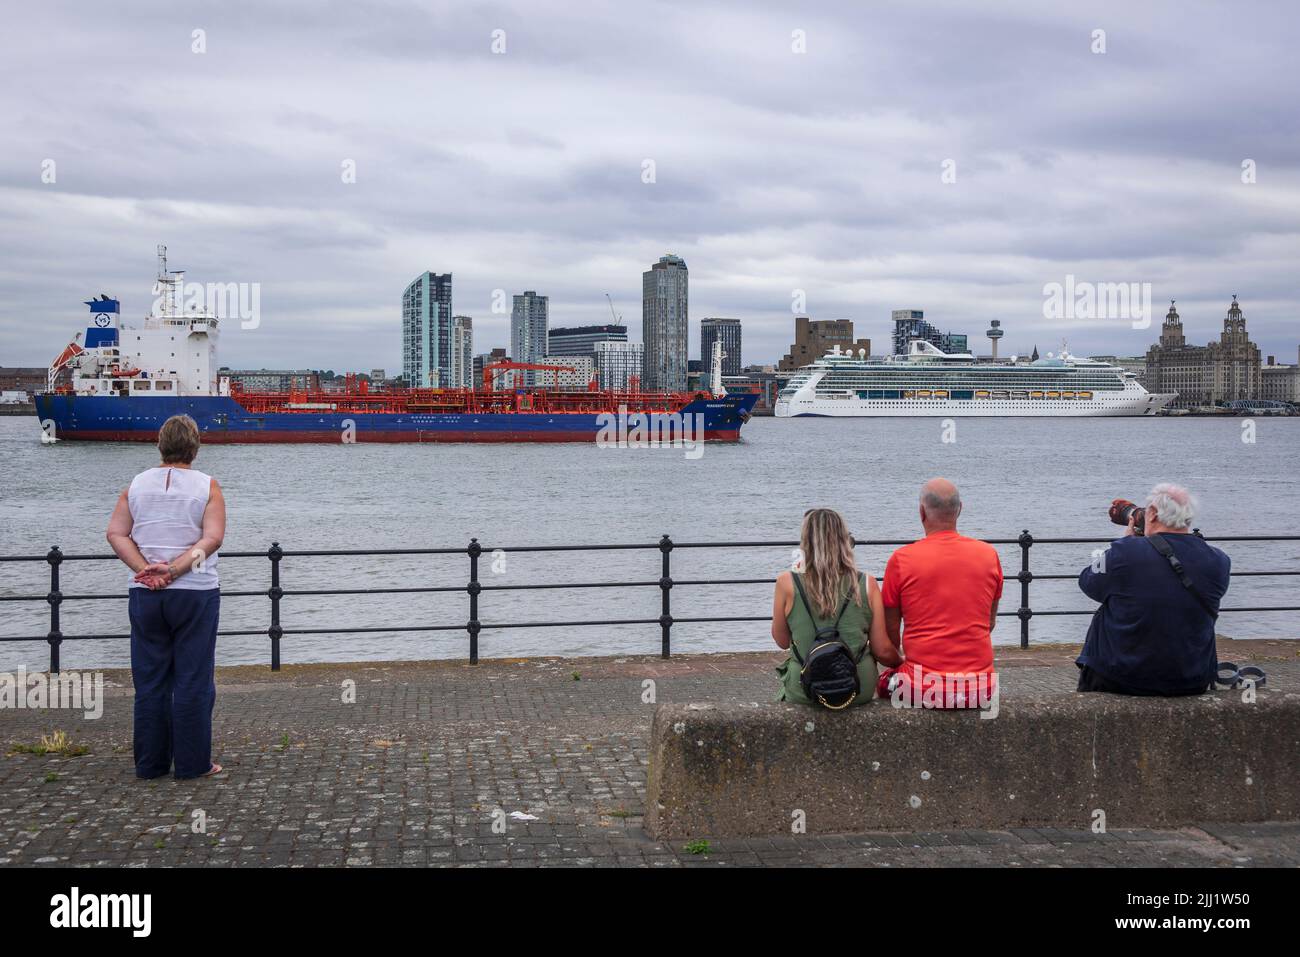 El barco de crucero Jewel of the Seas visto atracado en Liverpool Pierhead con Mississippi Star, un tanque de productos químicos/petrolíferos, Foto de stock